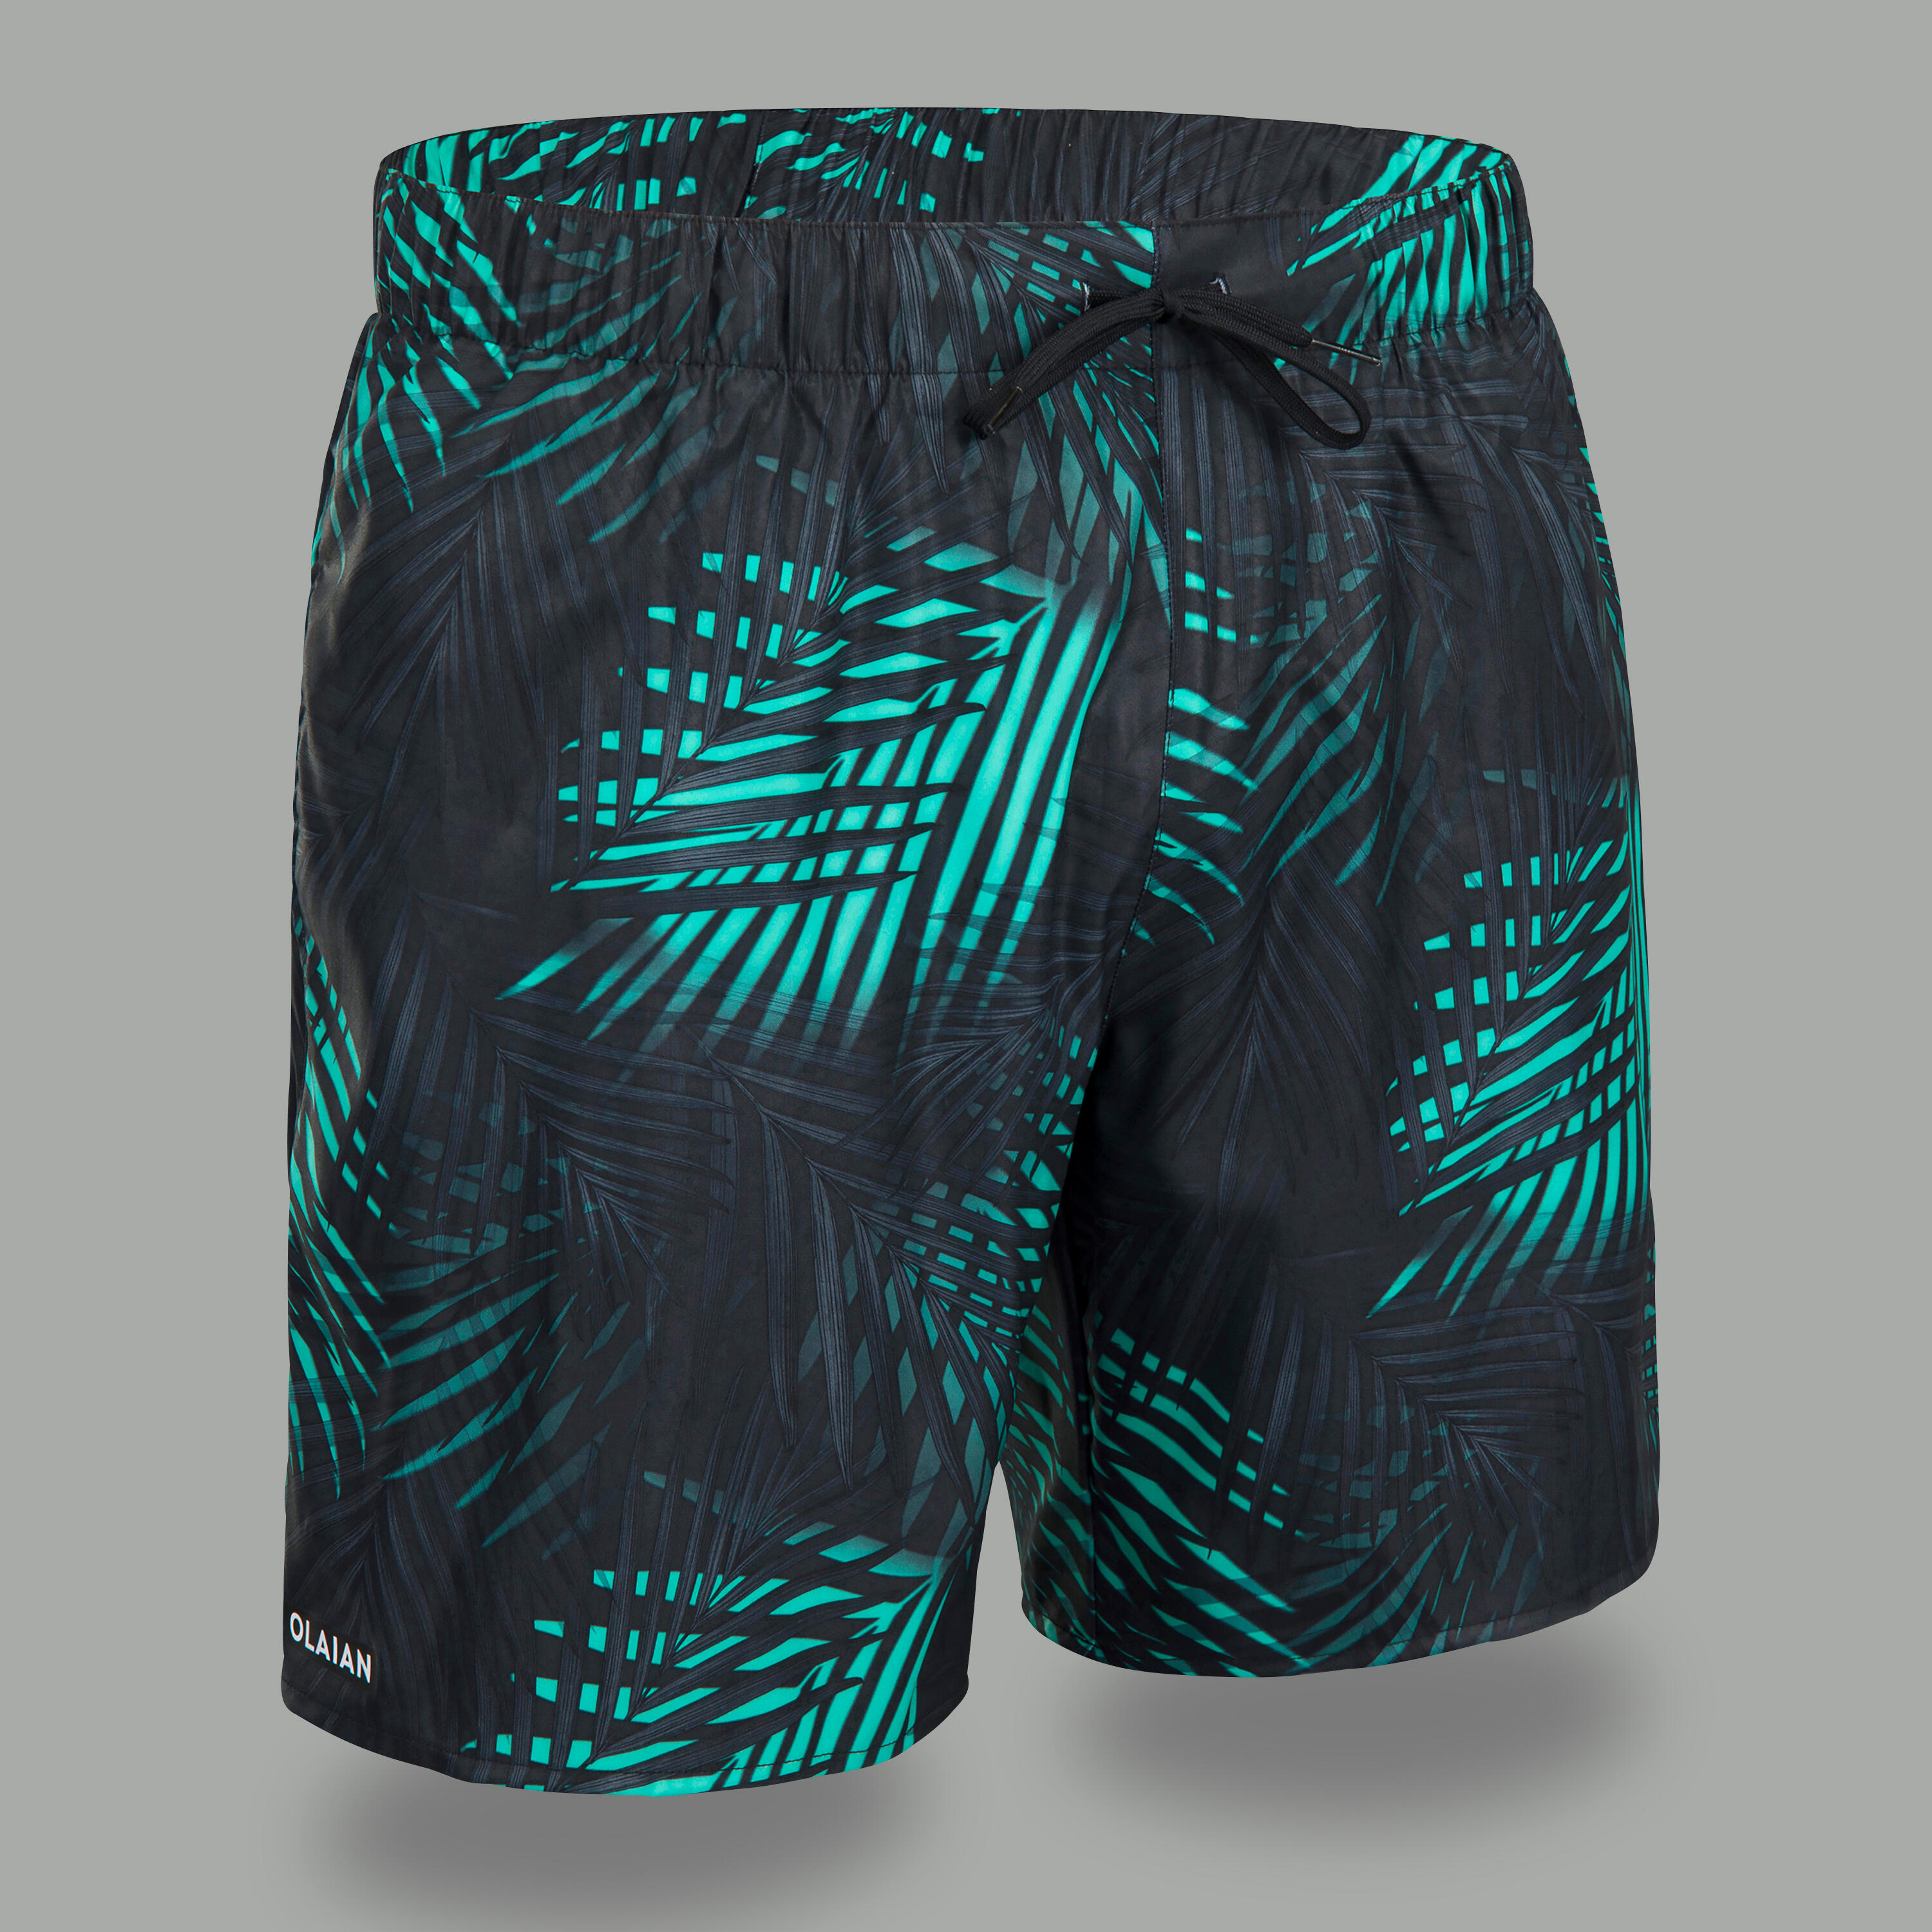 OLAIAN Men's Swim Shorts 15" - 100 Palm black turquoise